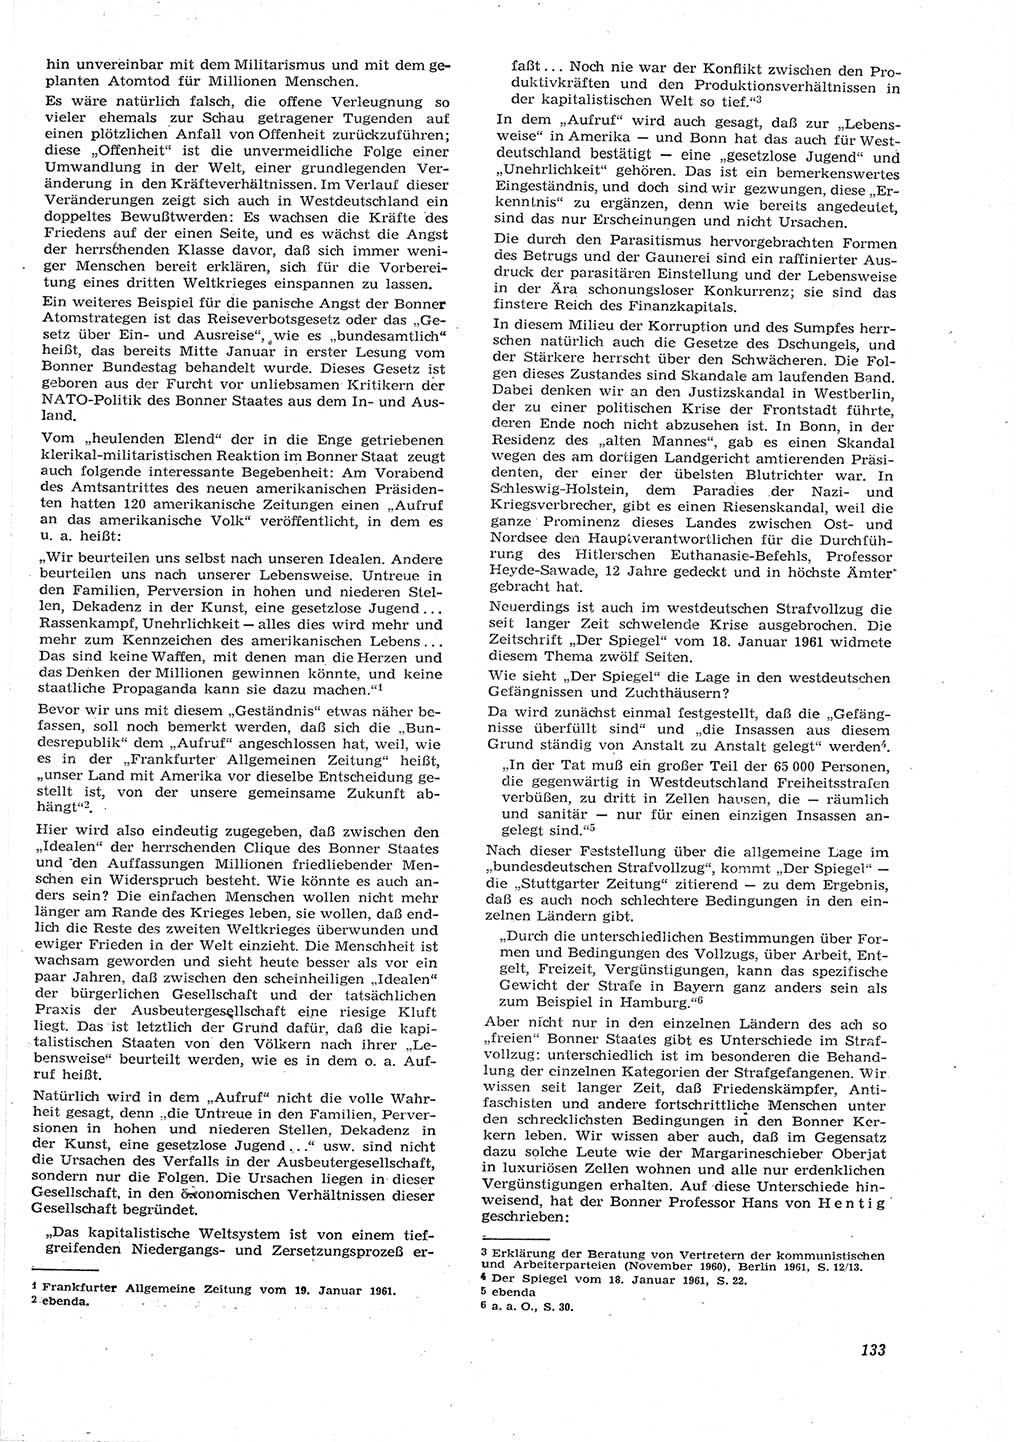 Neue Justiz (NJ), Zeitschrift für Recht und Rechtswissenschaft [Deutsche Demokratische Republik (DDR)], 15. Jahrgang 1961, Seite 133 (NJ DDR 1961, S. 133)